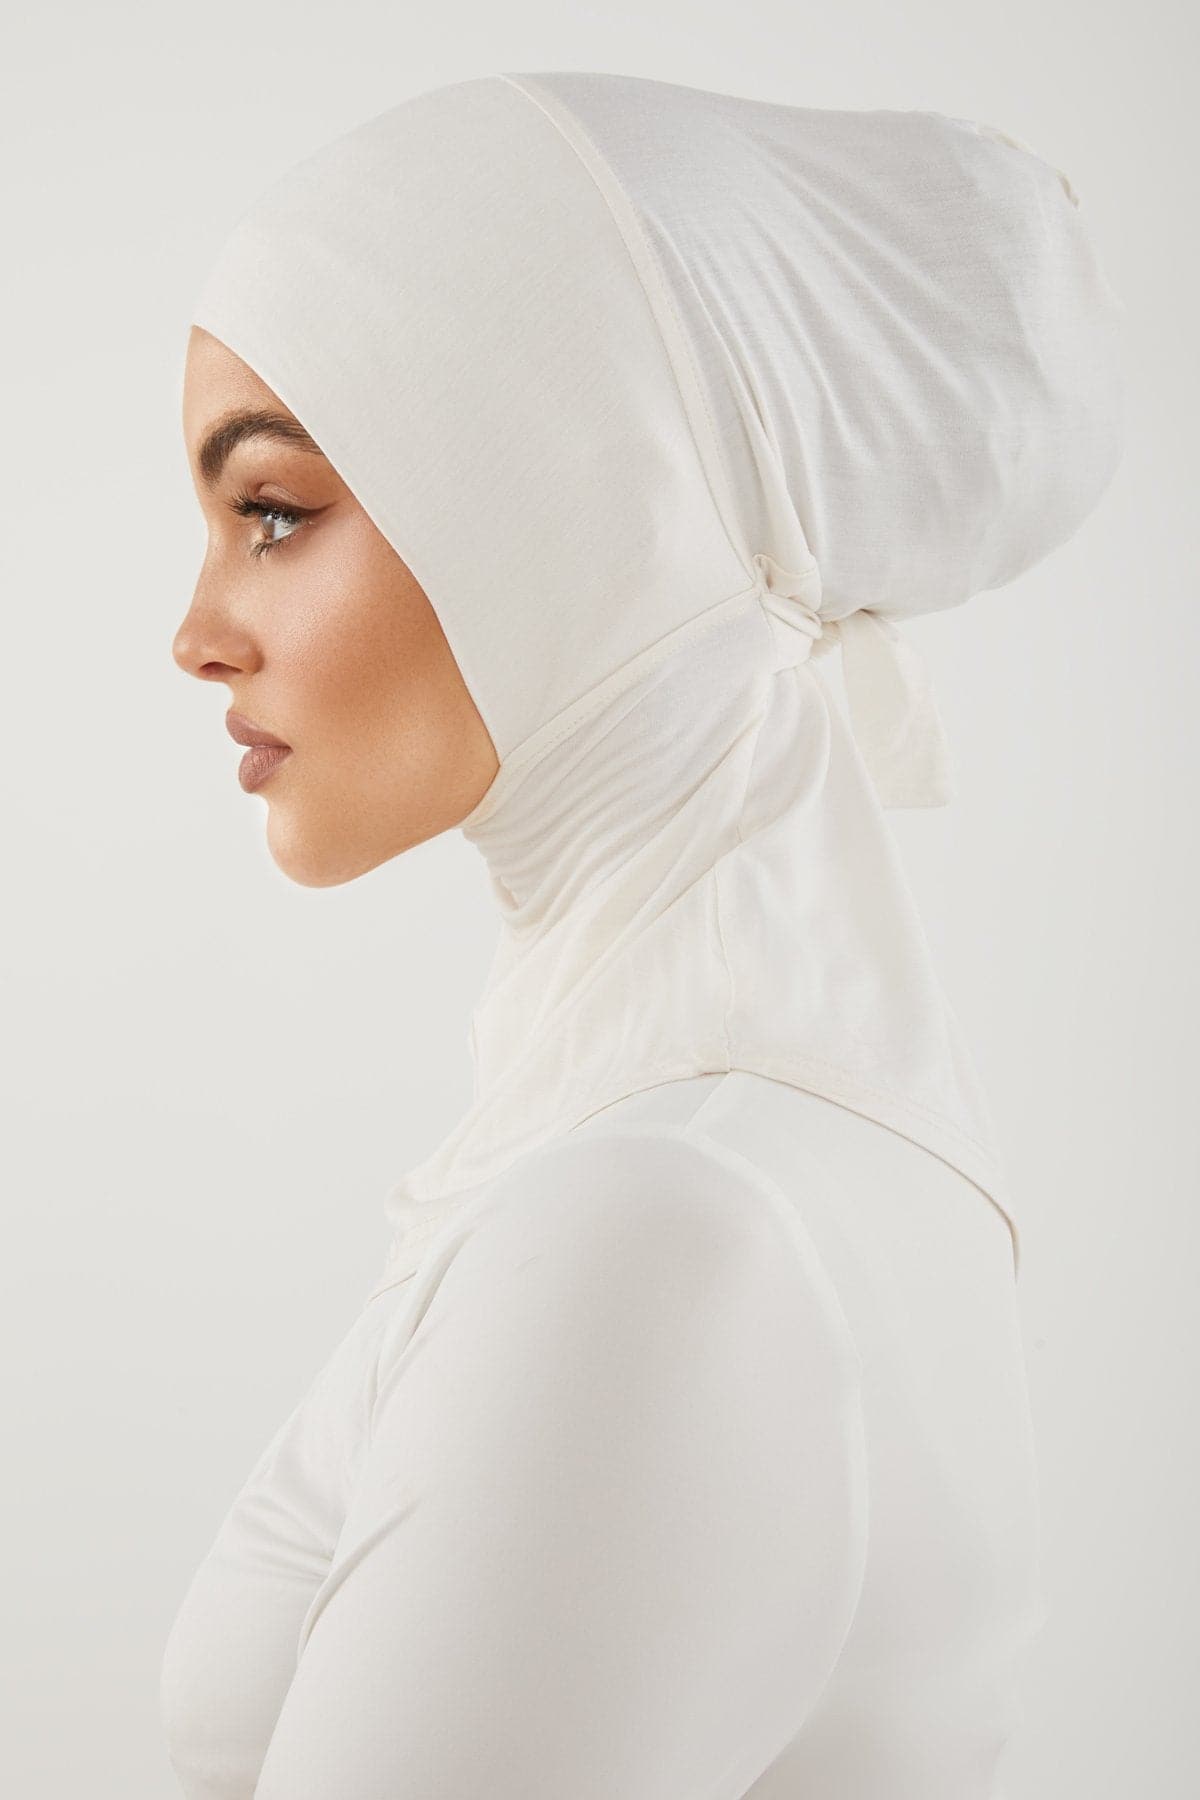 Fatima Neck Cover Hijab- Gardenia - Zahraa The Label